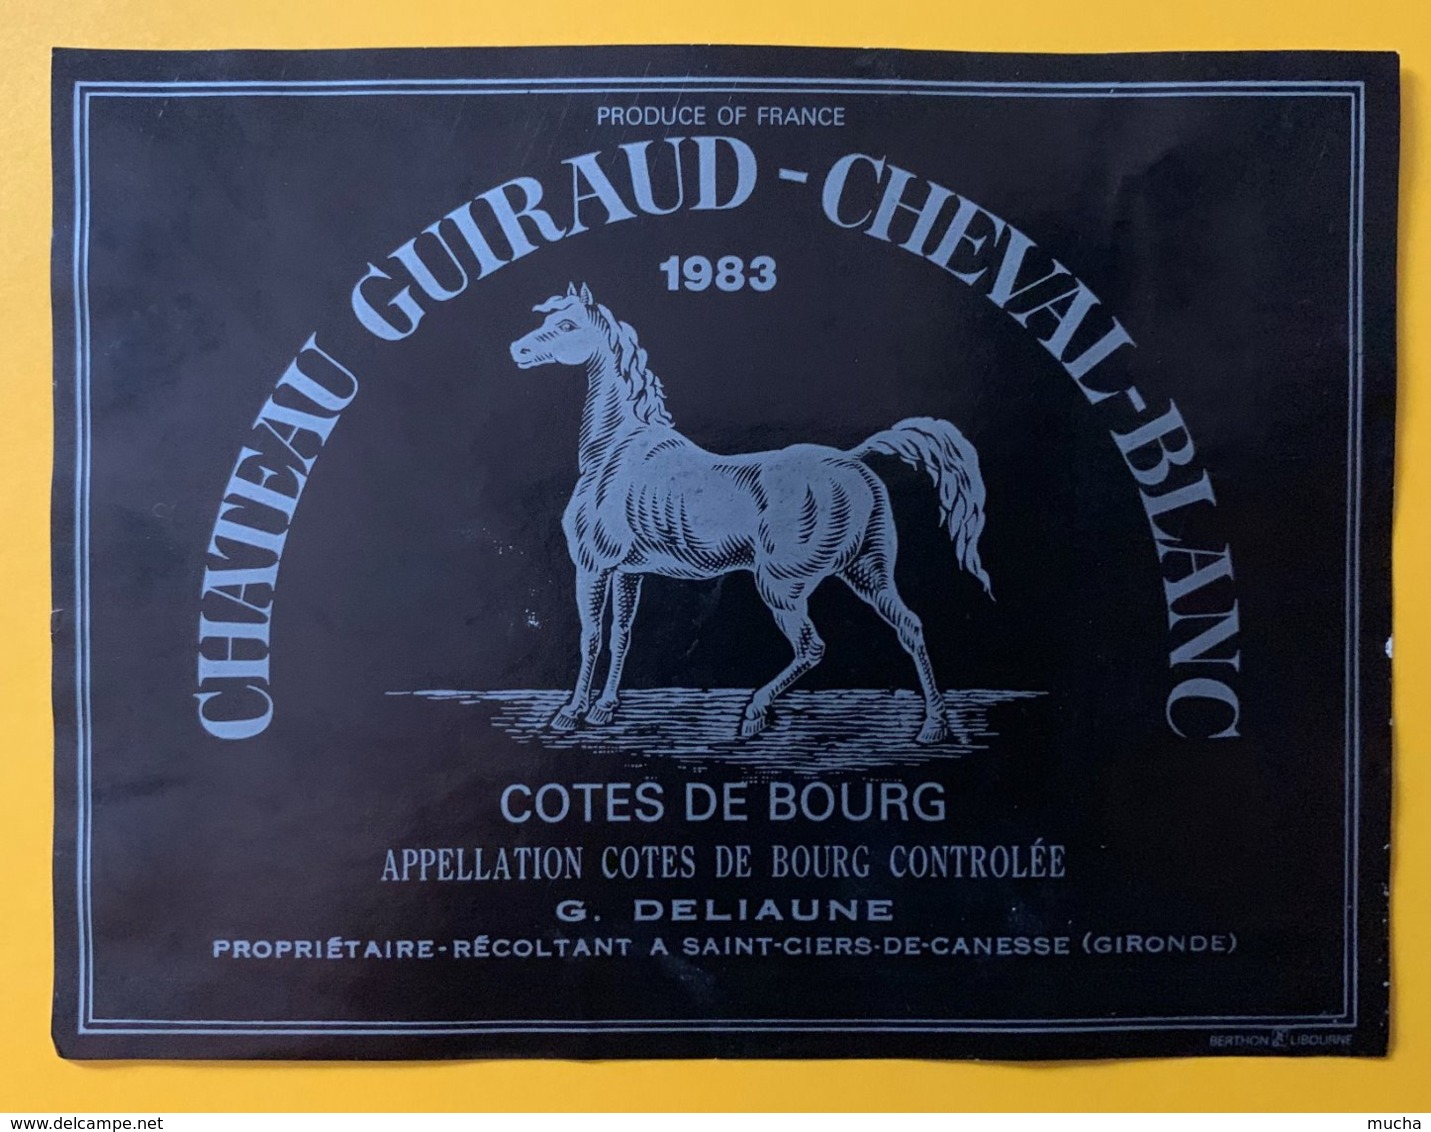 11762 - Château Guiraud-Cheval-Blanc Côtes De Bourg 1983 - Bordeaux